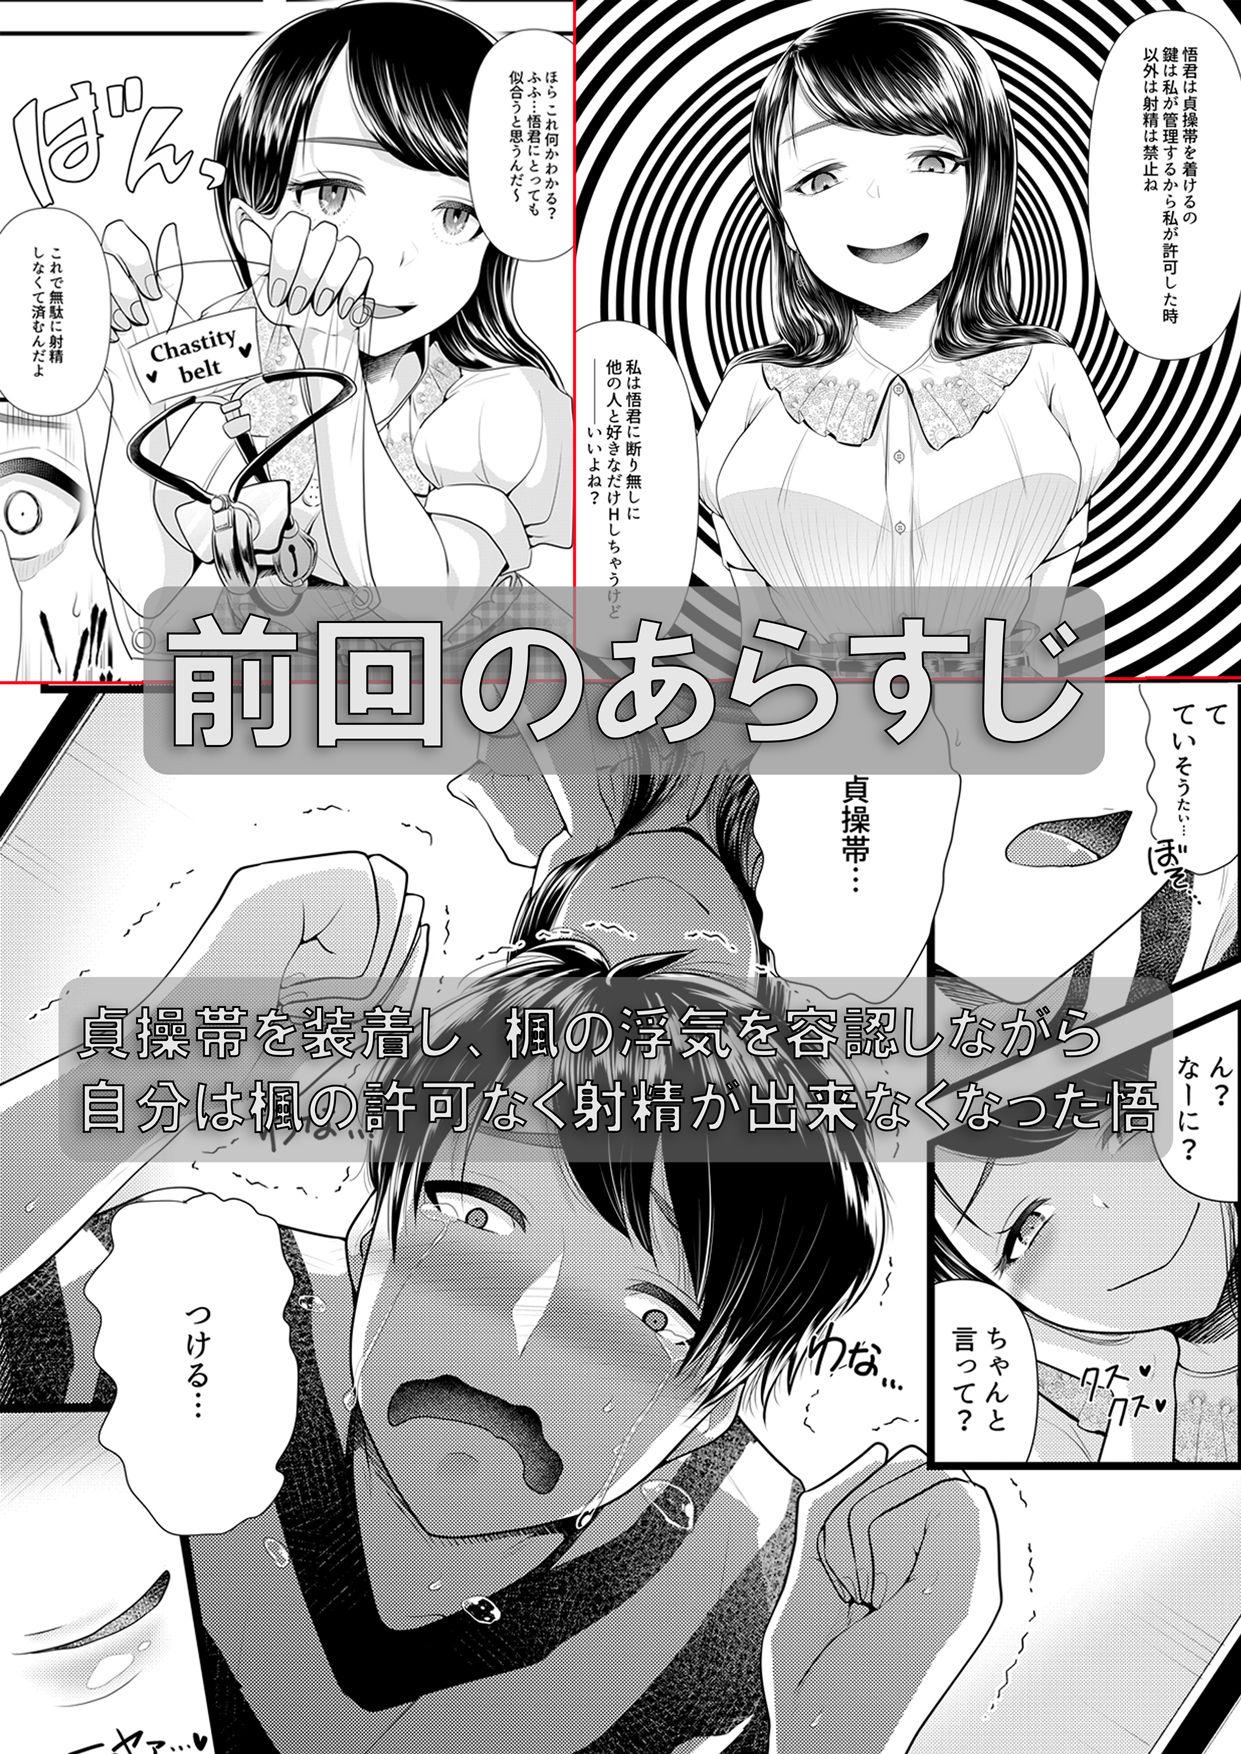 Bare Hajimete no Netorare Maso-ka Choukyou 3 - Original Blonde - Page 2